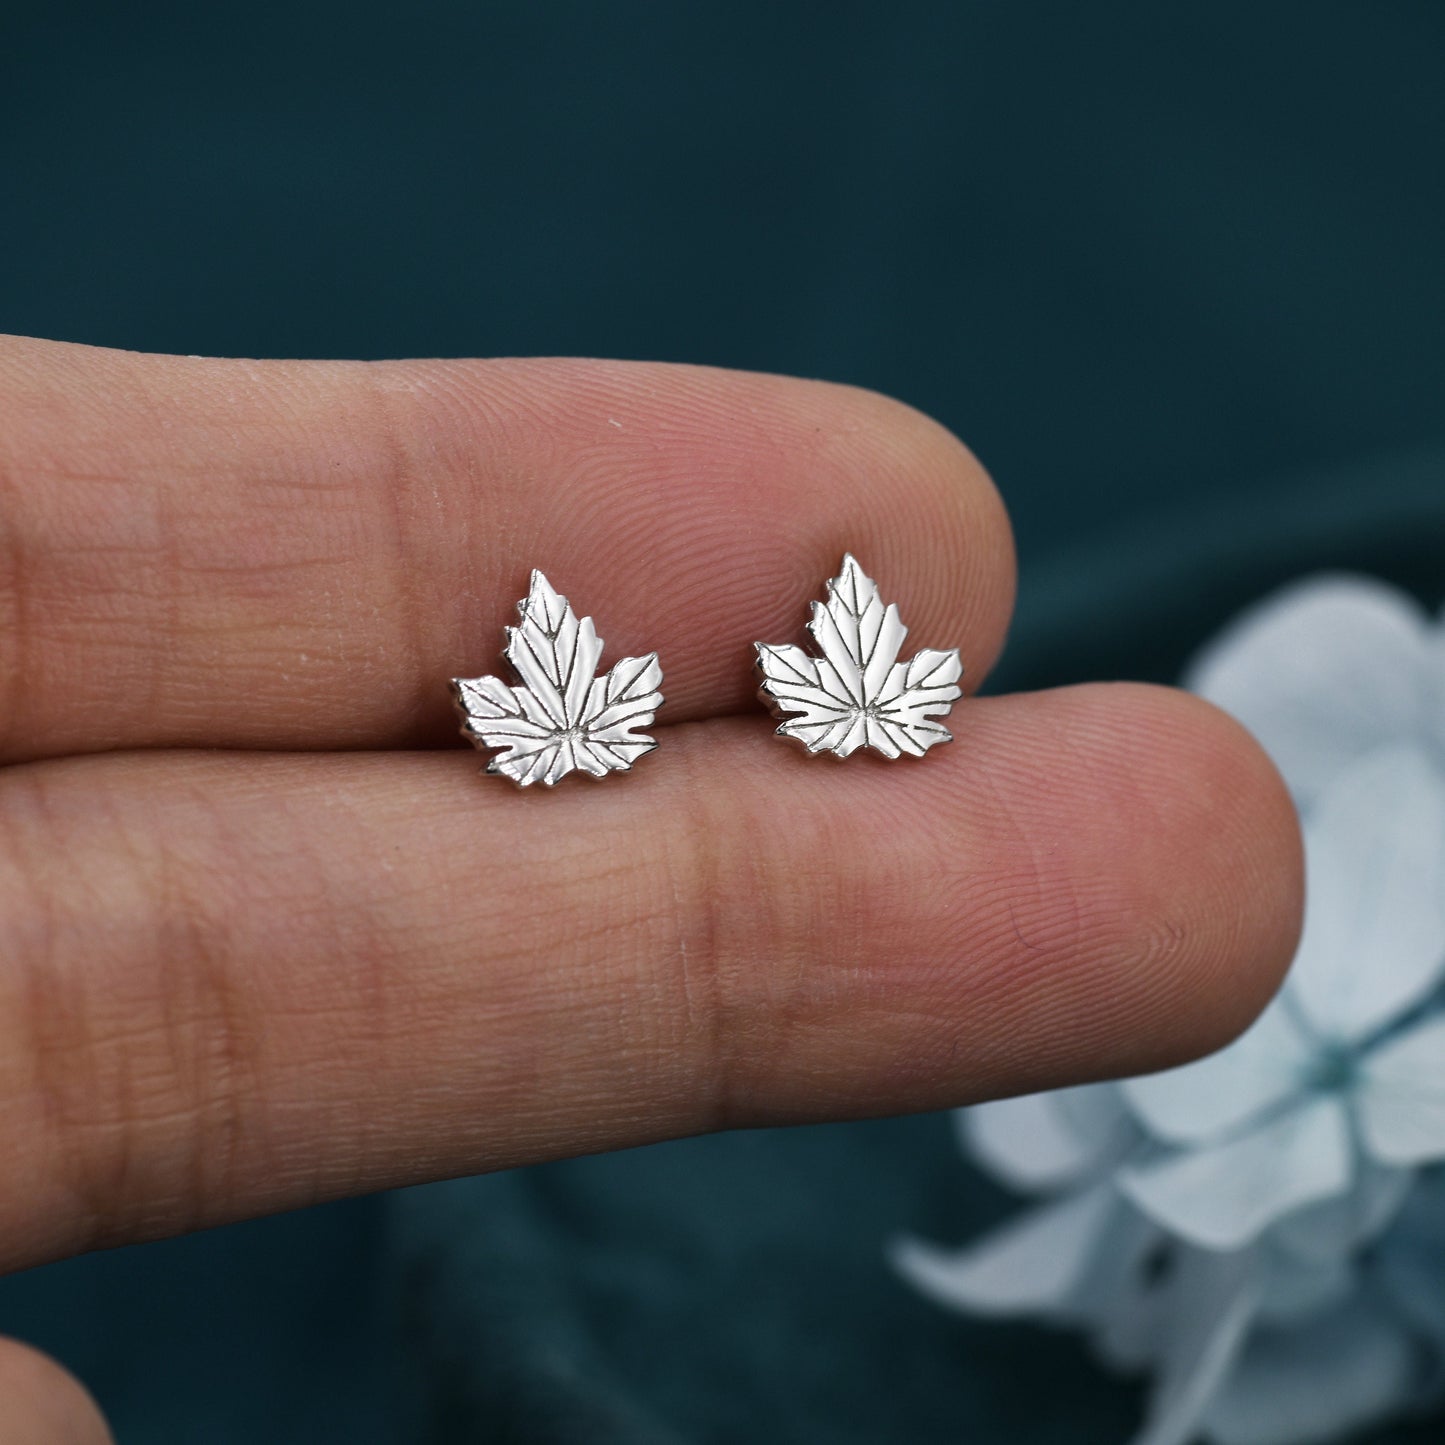 Maple Leaf Stud Earrings in Sterling Silver - Detailed Leaf Earrings - Nature Inspired Flower Earrings -Leaf Earrings,  Fun, Whimsical